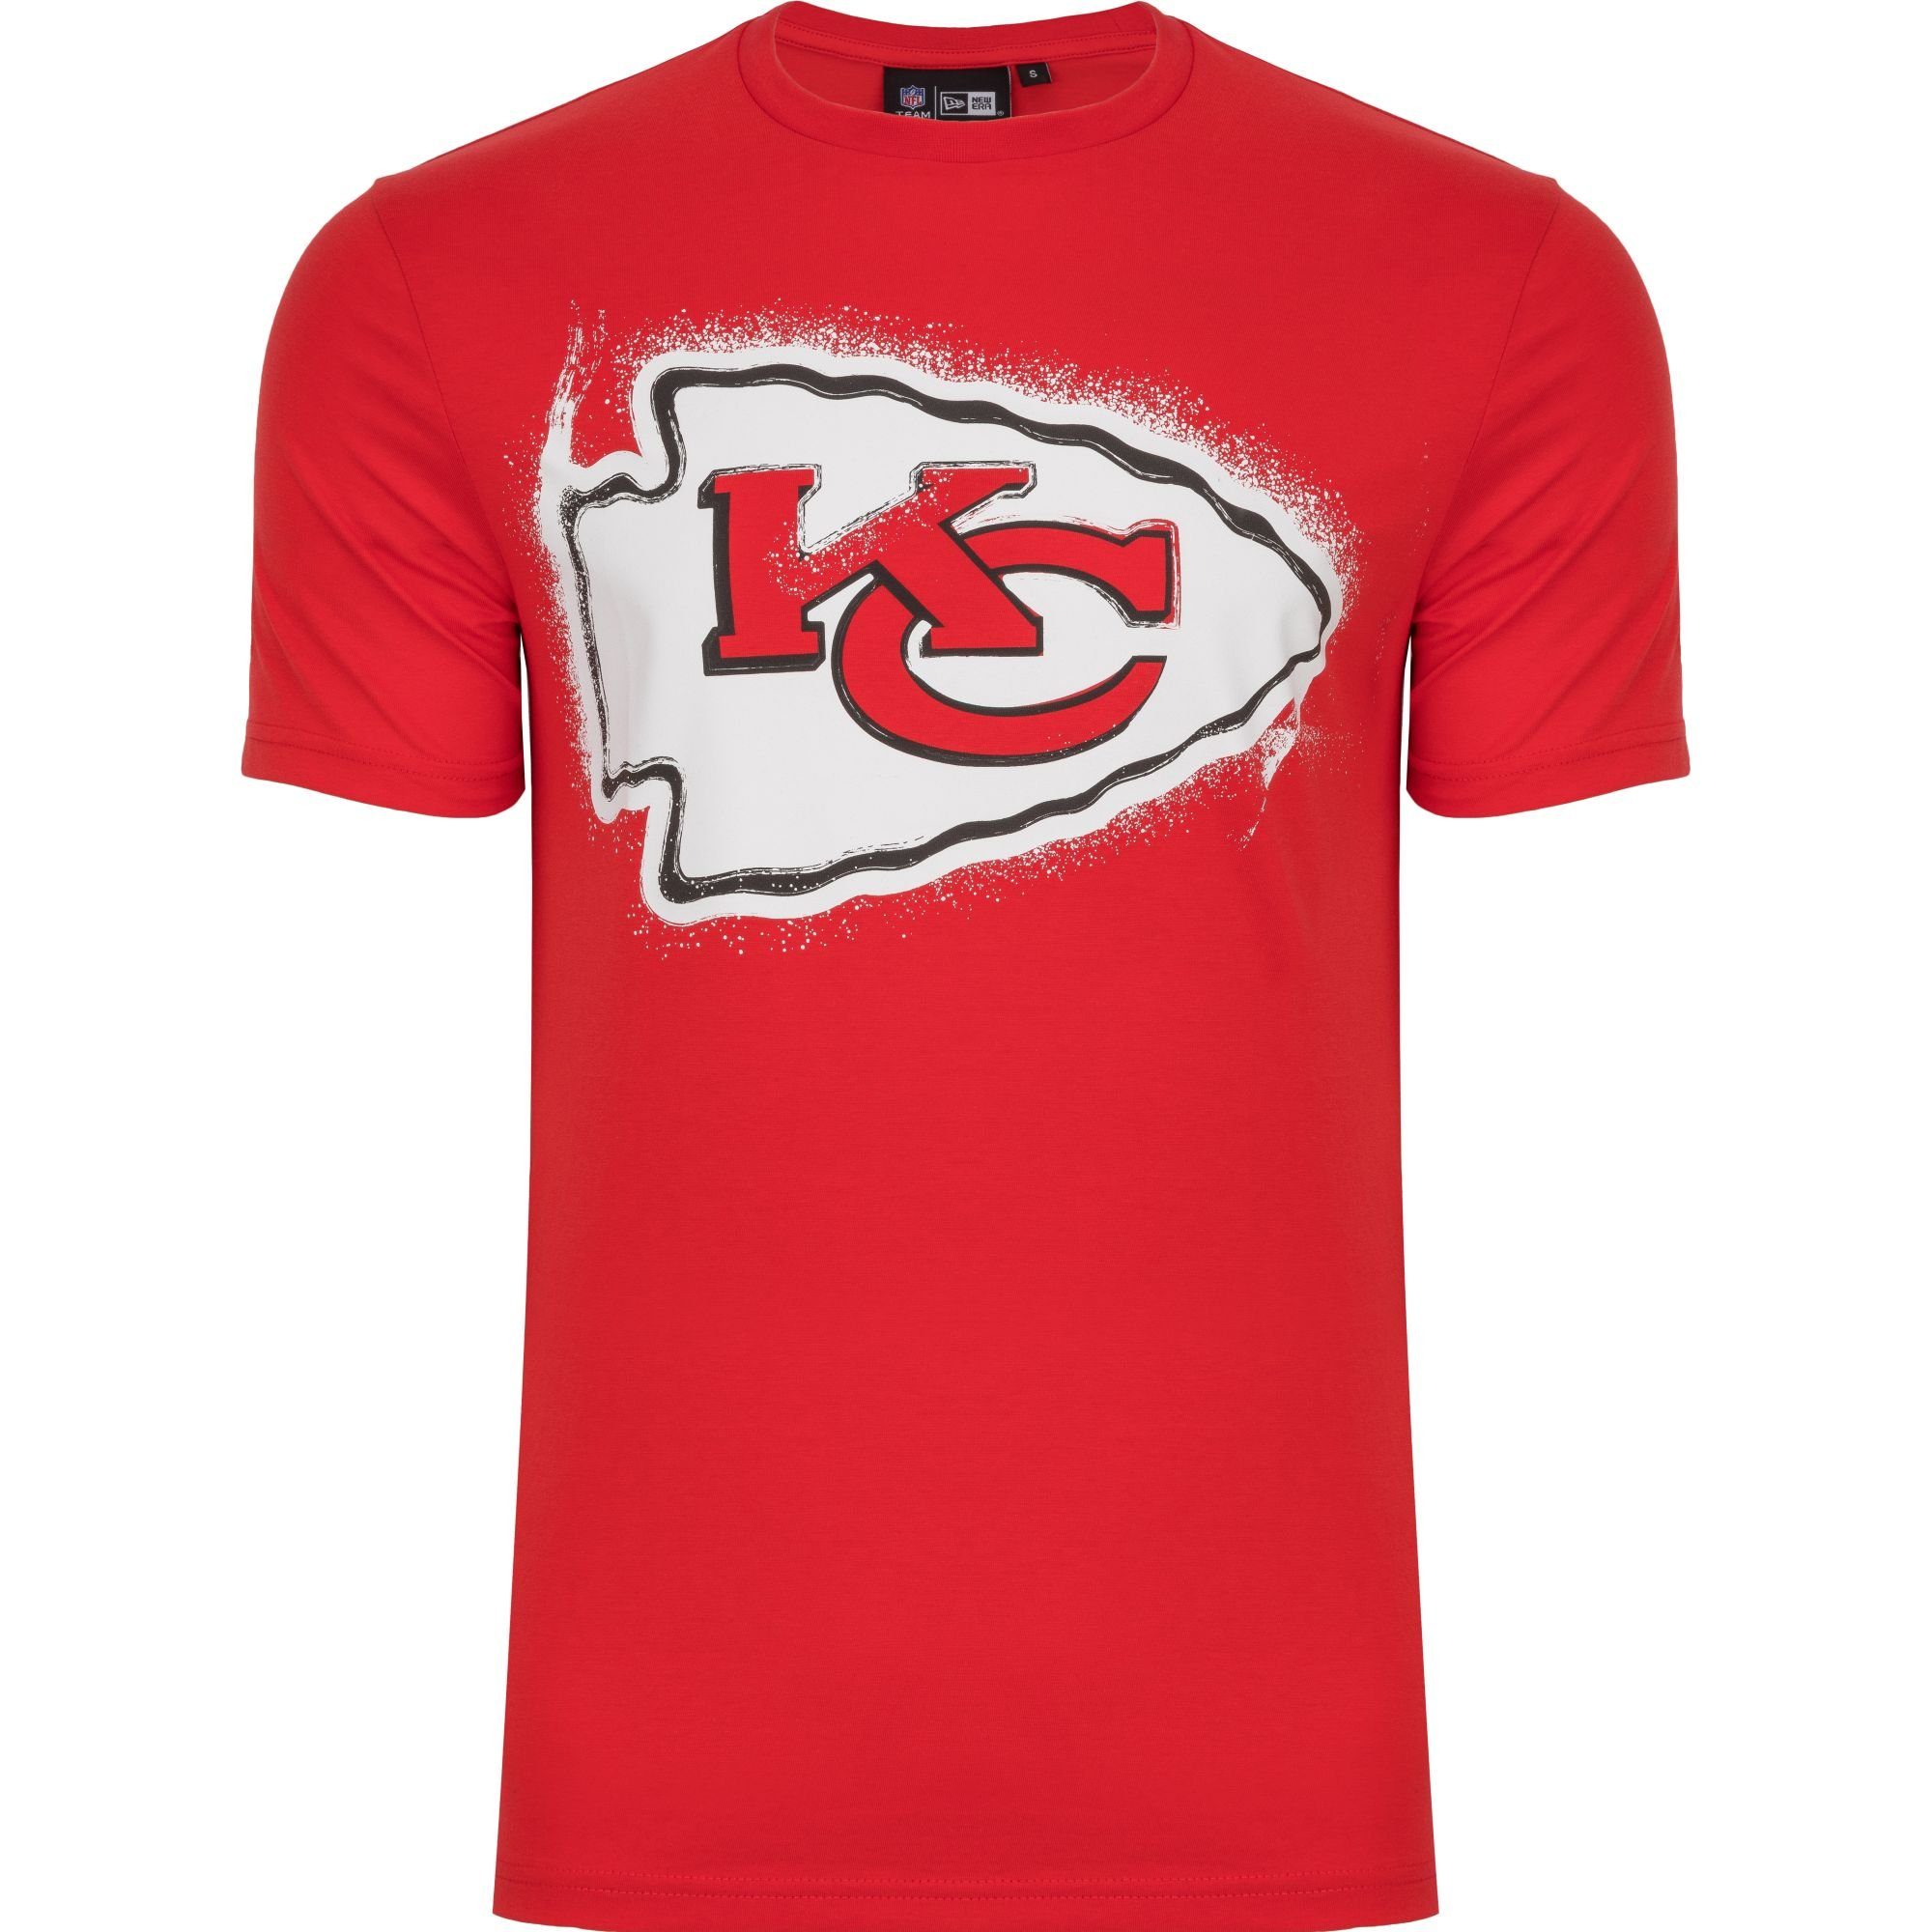 New Era Print-Shirt NFL SPRAY Bucs Chiefs Seahawks Patriots Packer Kansas City Chiefs 2.0